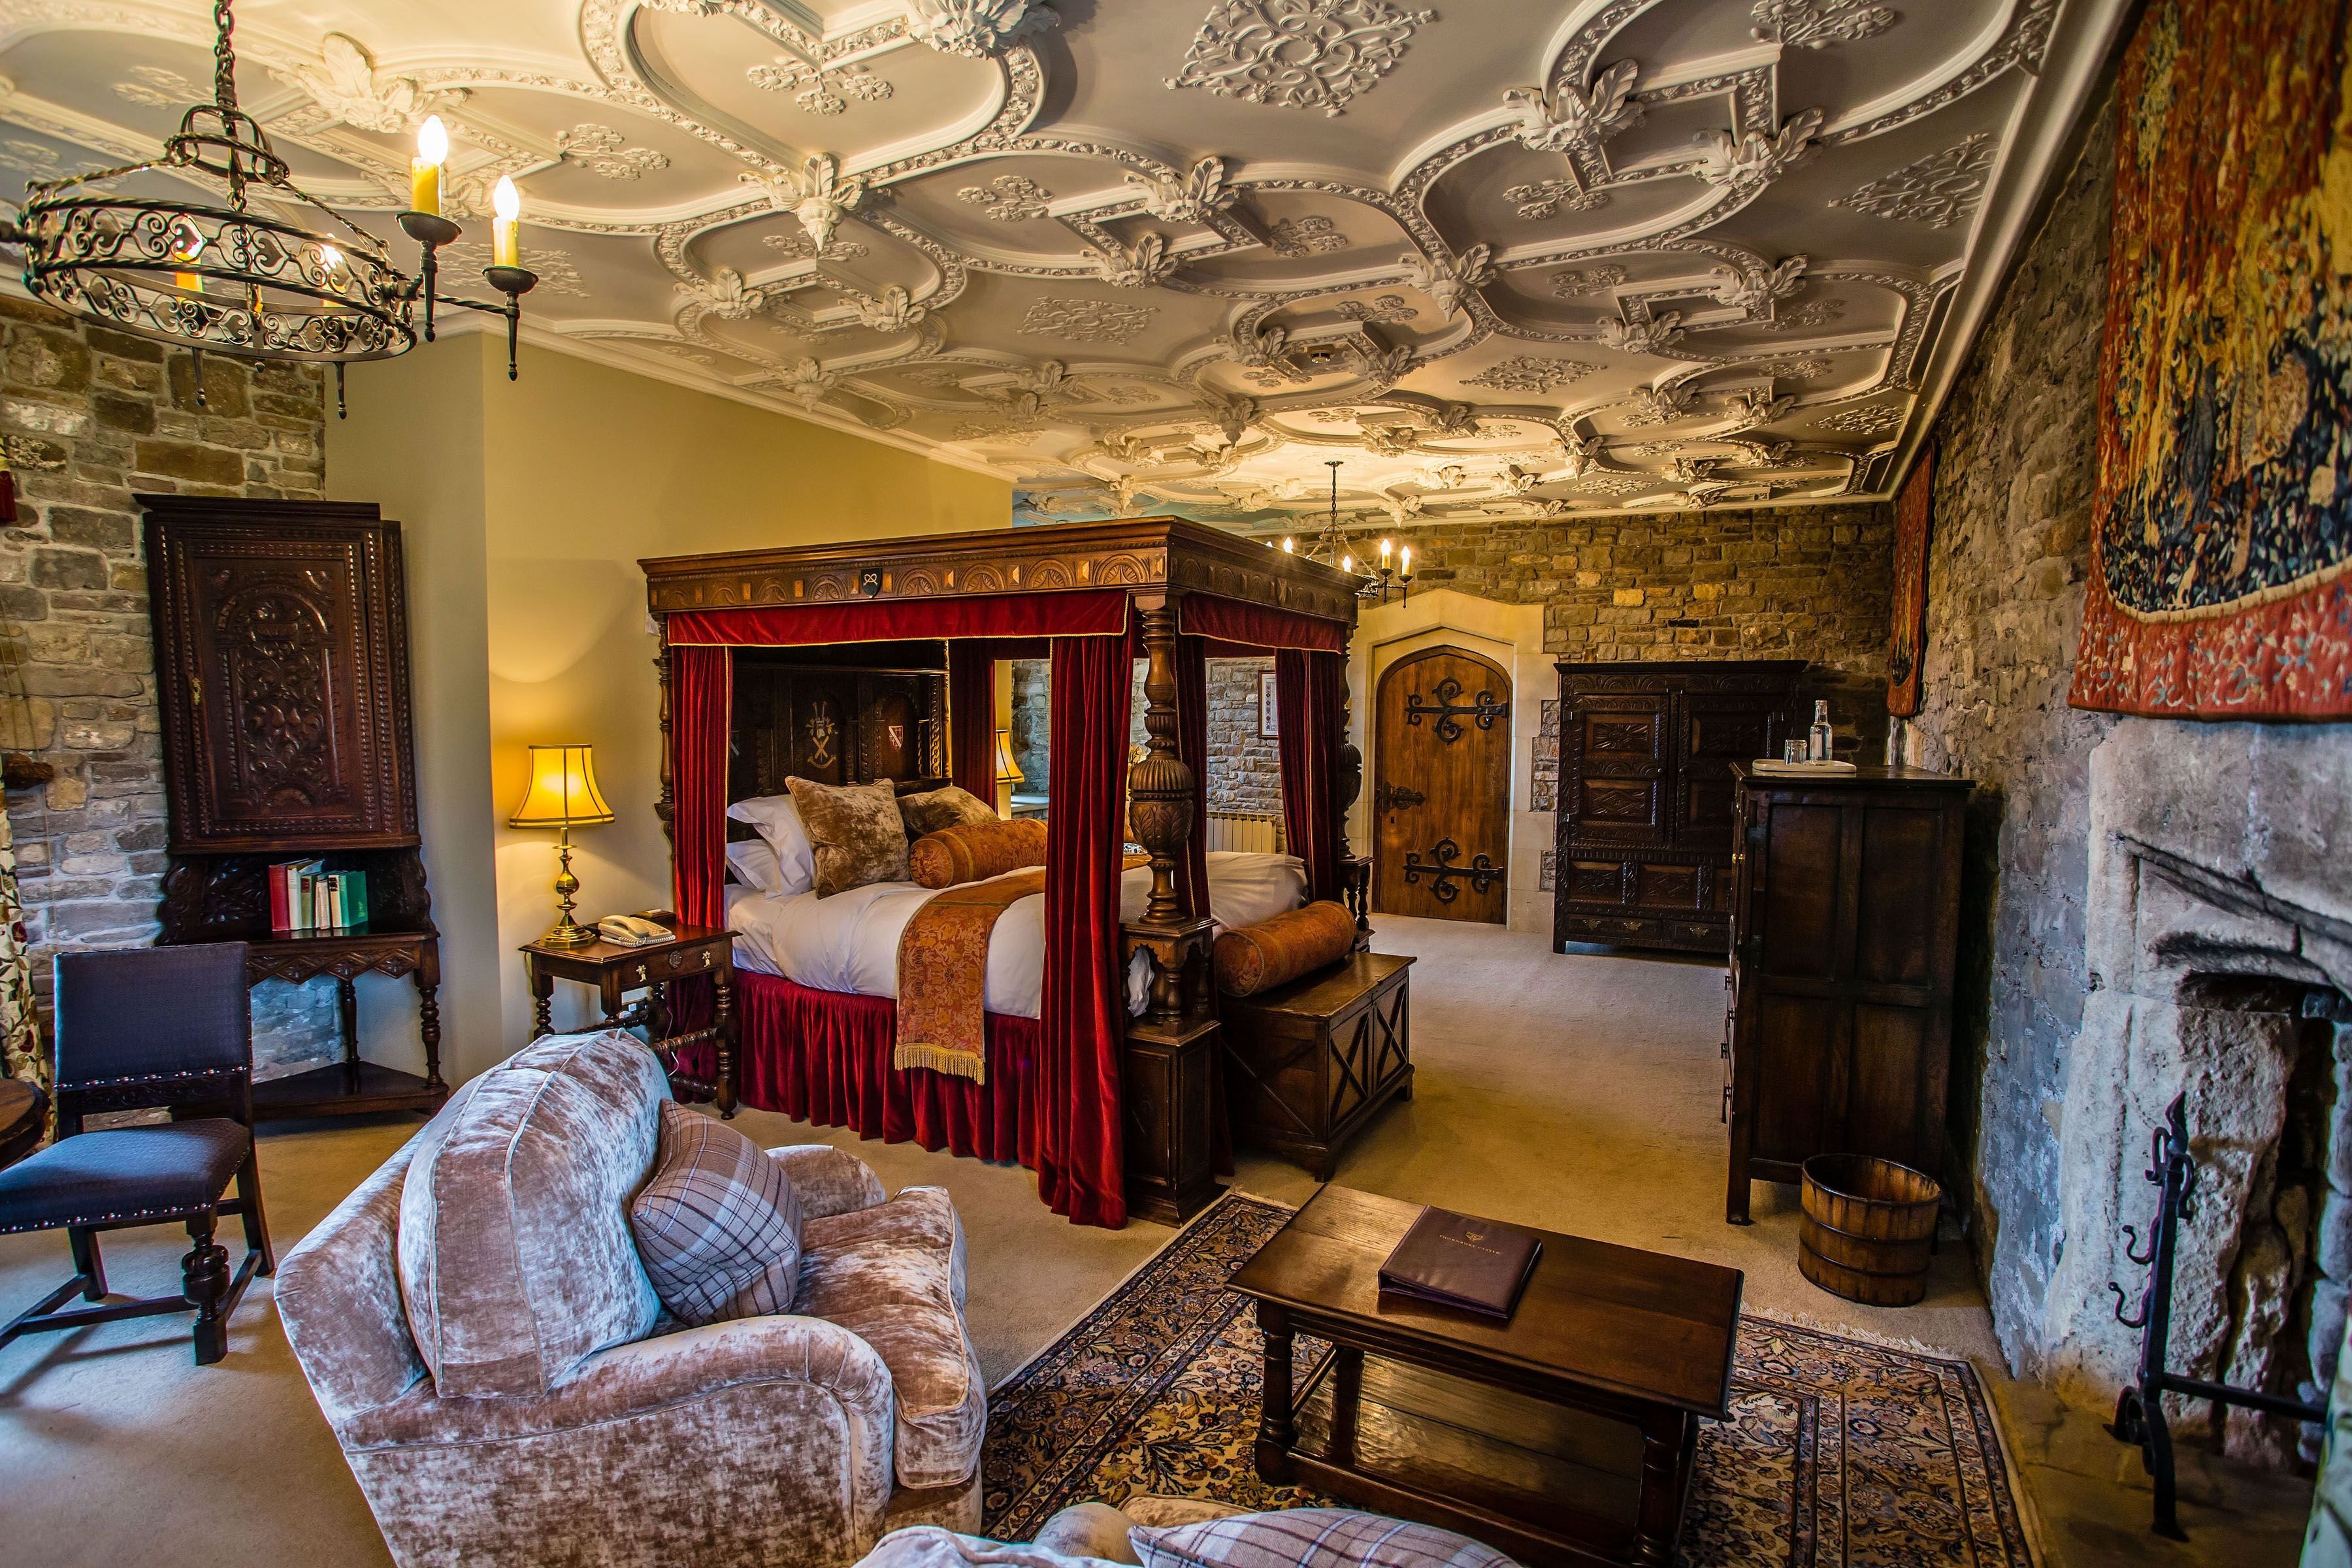 Комната древностей. Замок Хивер Англия интерьеры. Замок Хивер Англия внутри комнаты. Спальня в замке Уорик в Англии. Замок Хивер Англия комната Анны Болейн.